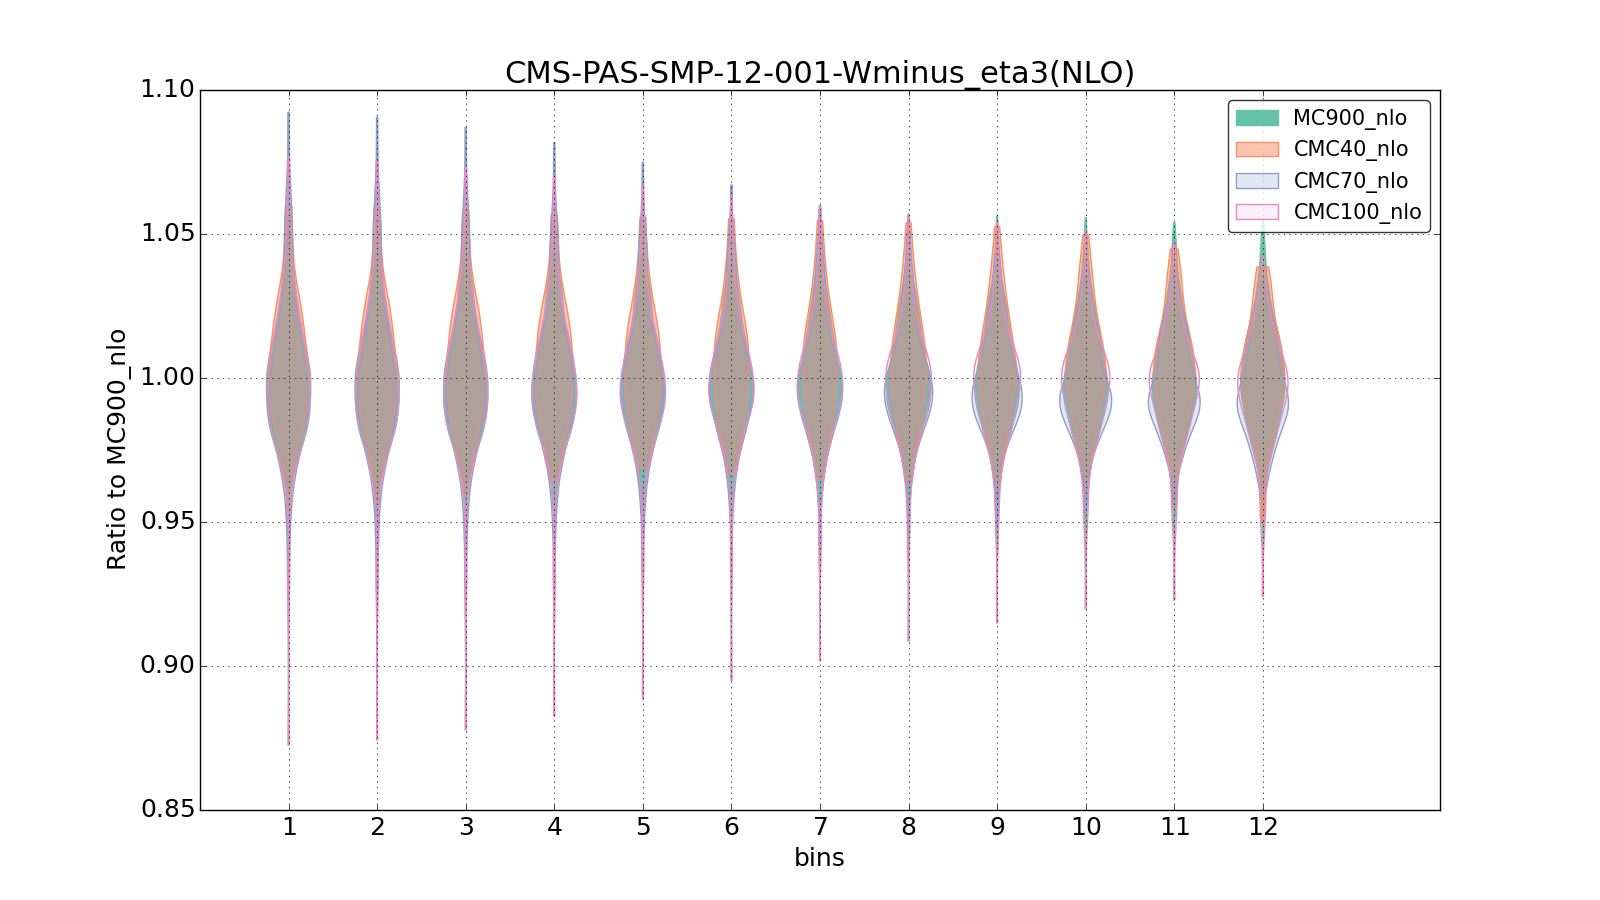 figure plots/CMCpheno/group_1_violinplot_CMS-PAS-SMP-12-001-Wminus_eta3(NLO).png